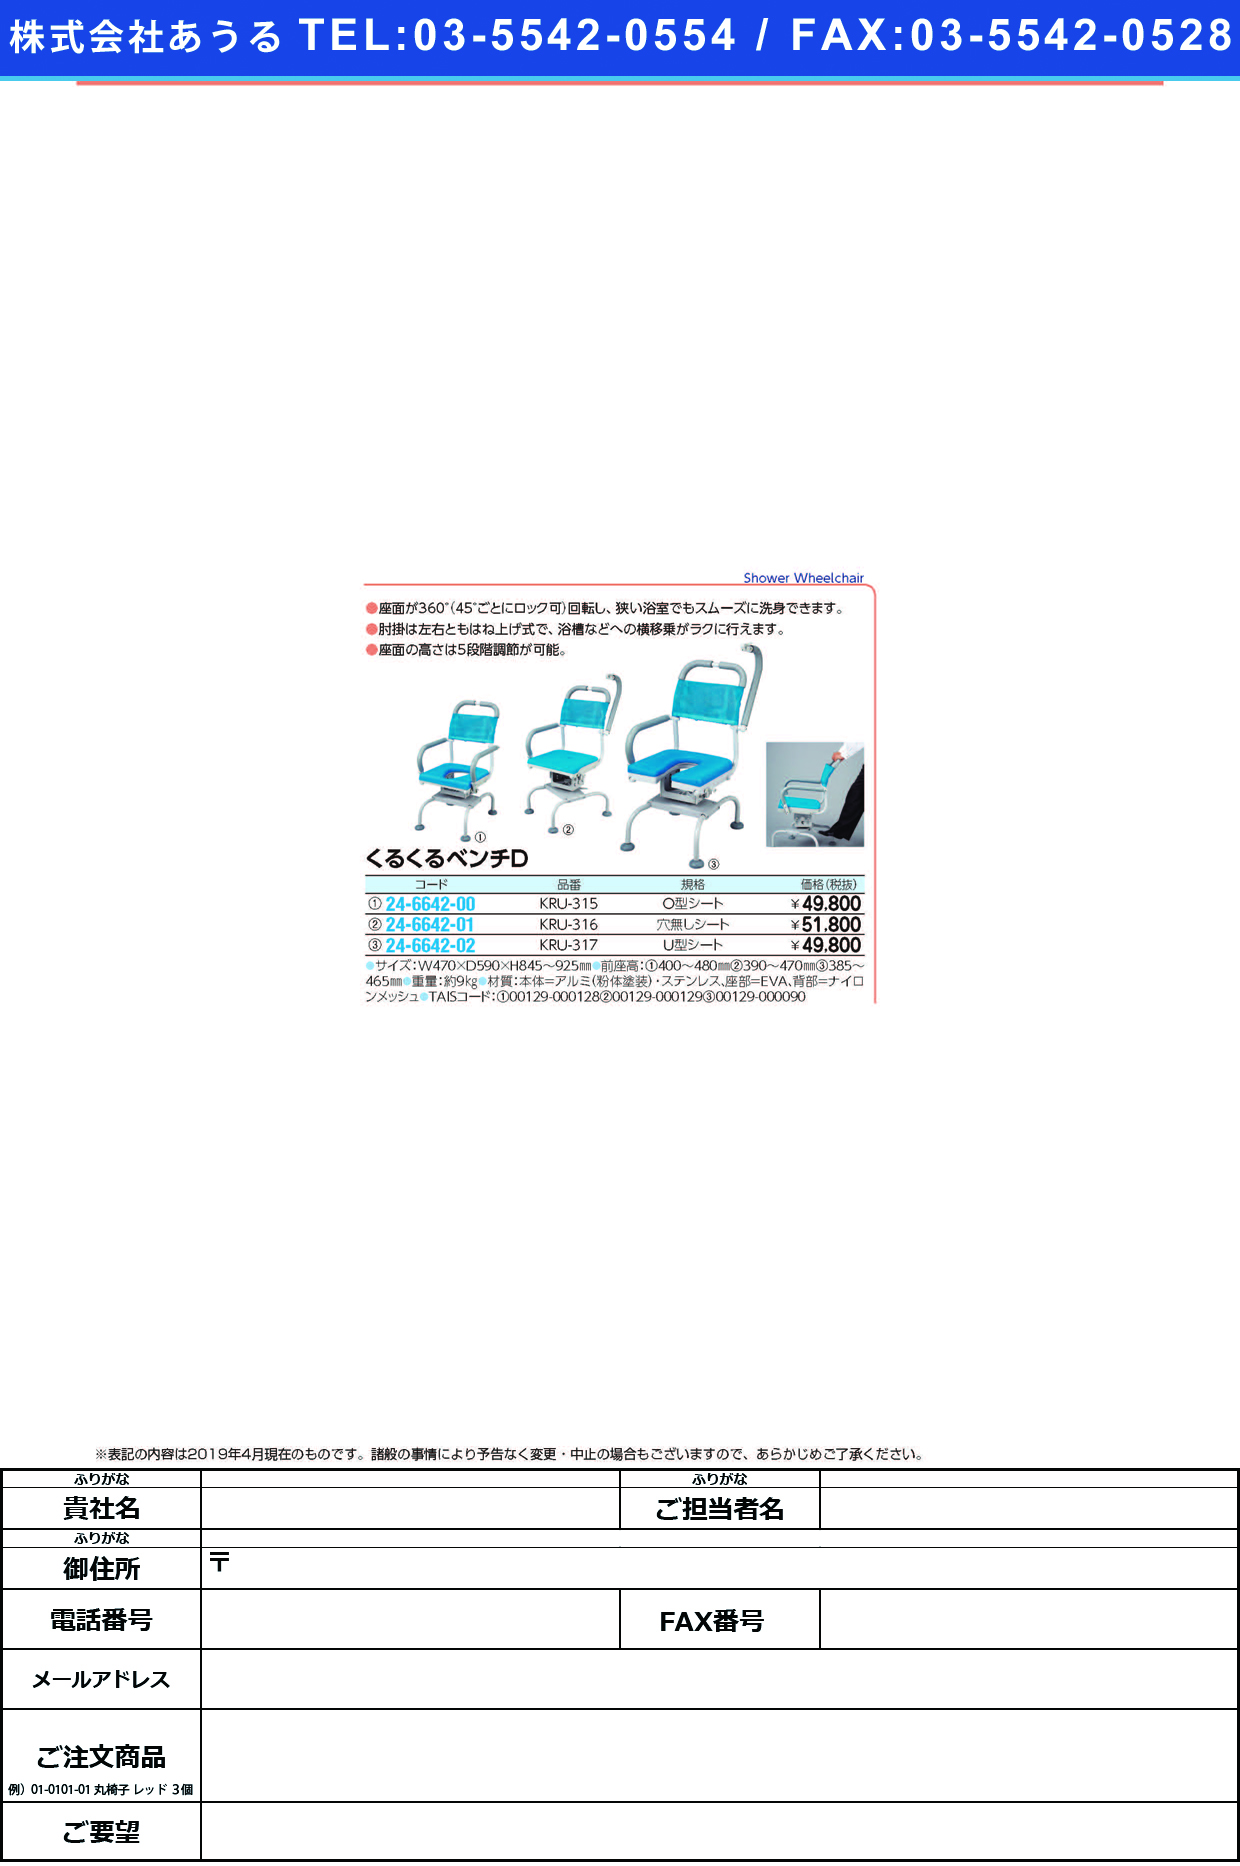 (24-6642-02)くるくるベンチ（Ｕ型シート） KRU-317 ｸﾙｸﾙﾍﾞﾝﾁD(Uｶﾞﾀｼｰﾄ)【1台単位】【2019年カタログ商品】